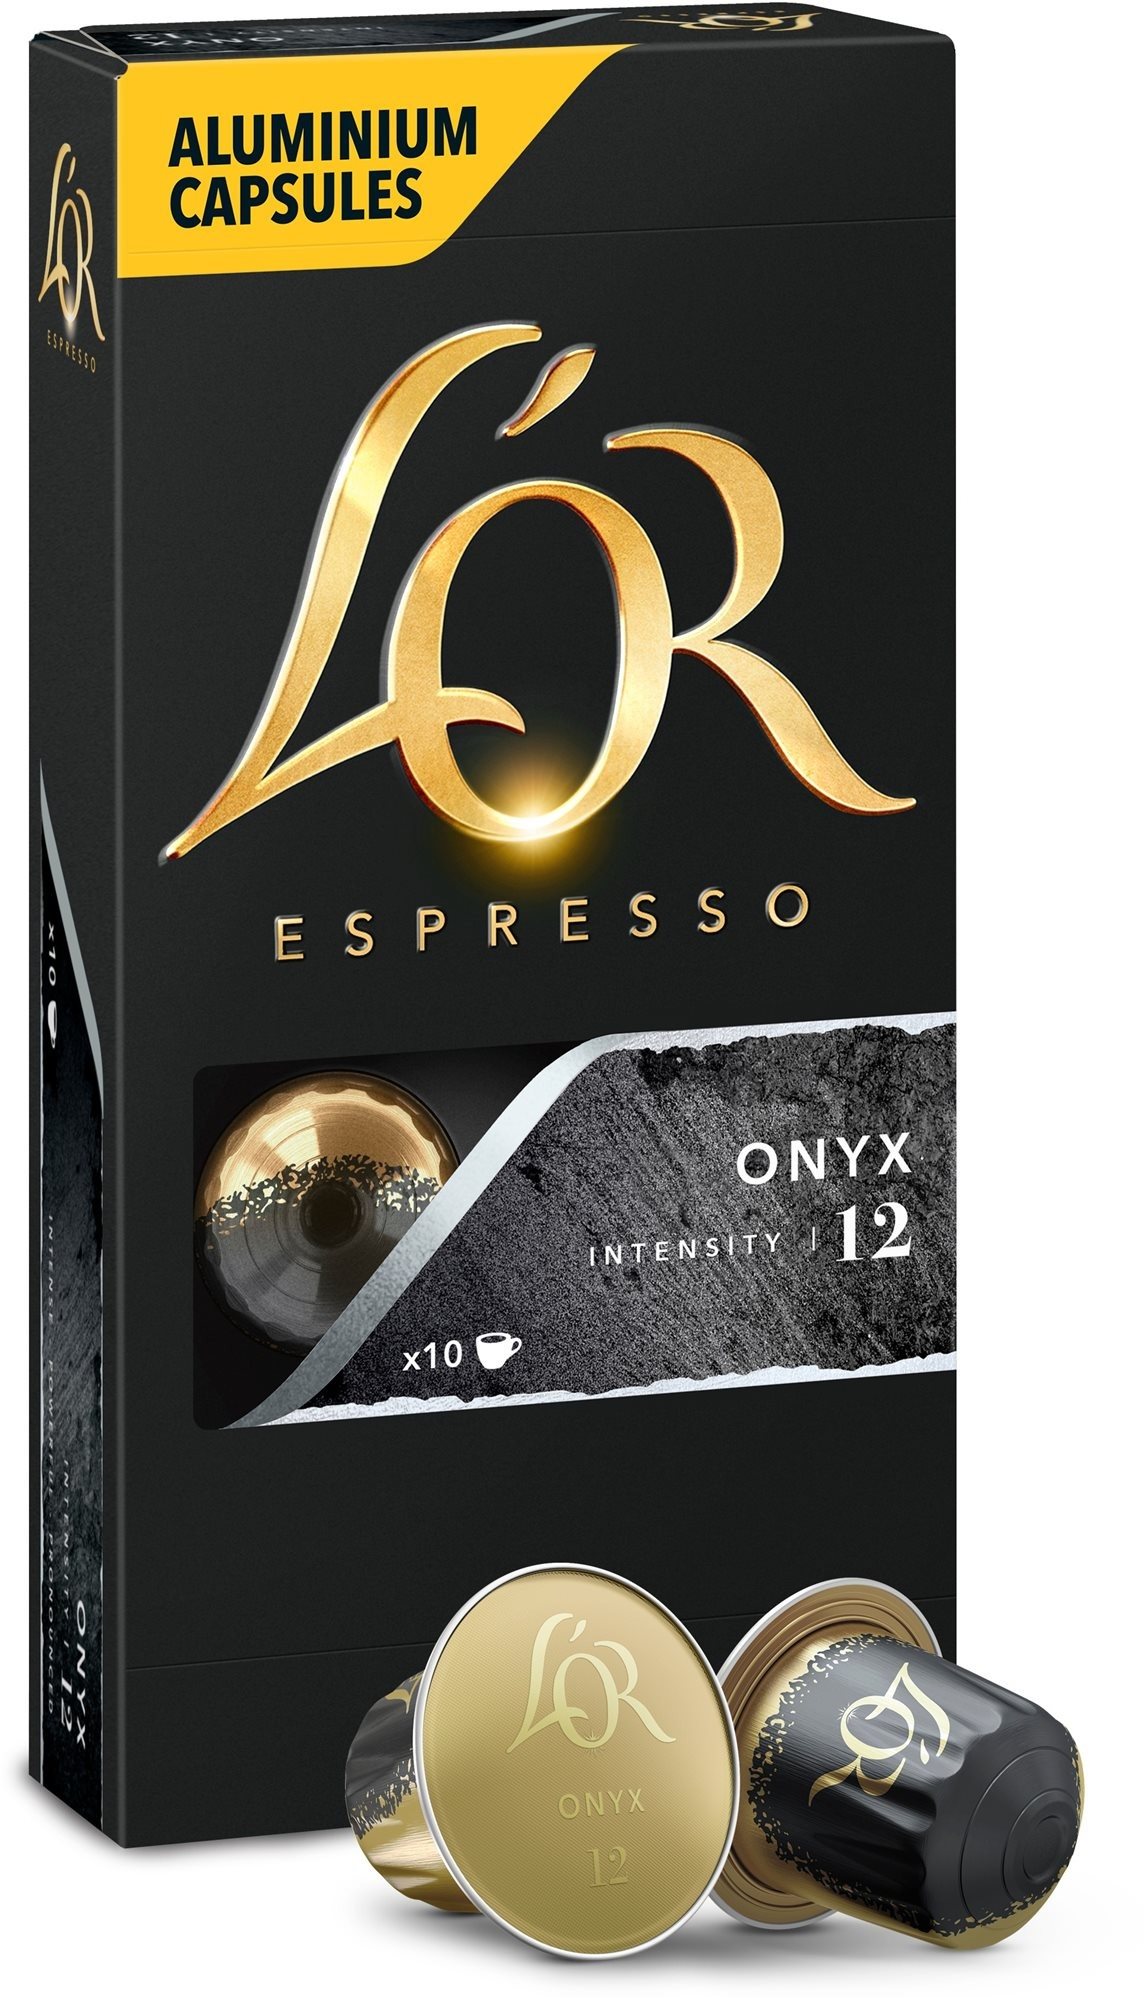 Kávékapszula L'OR Espresso Onyx 10db, alumínium